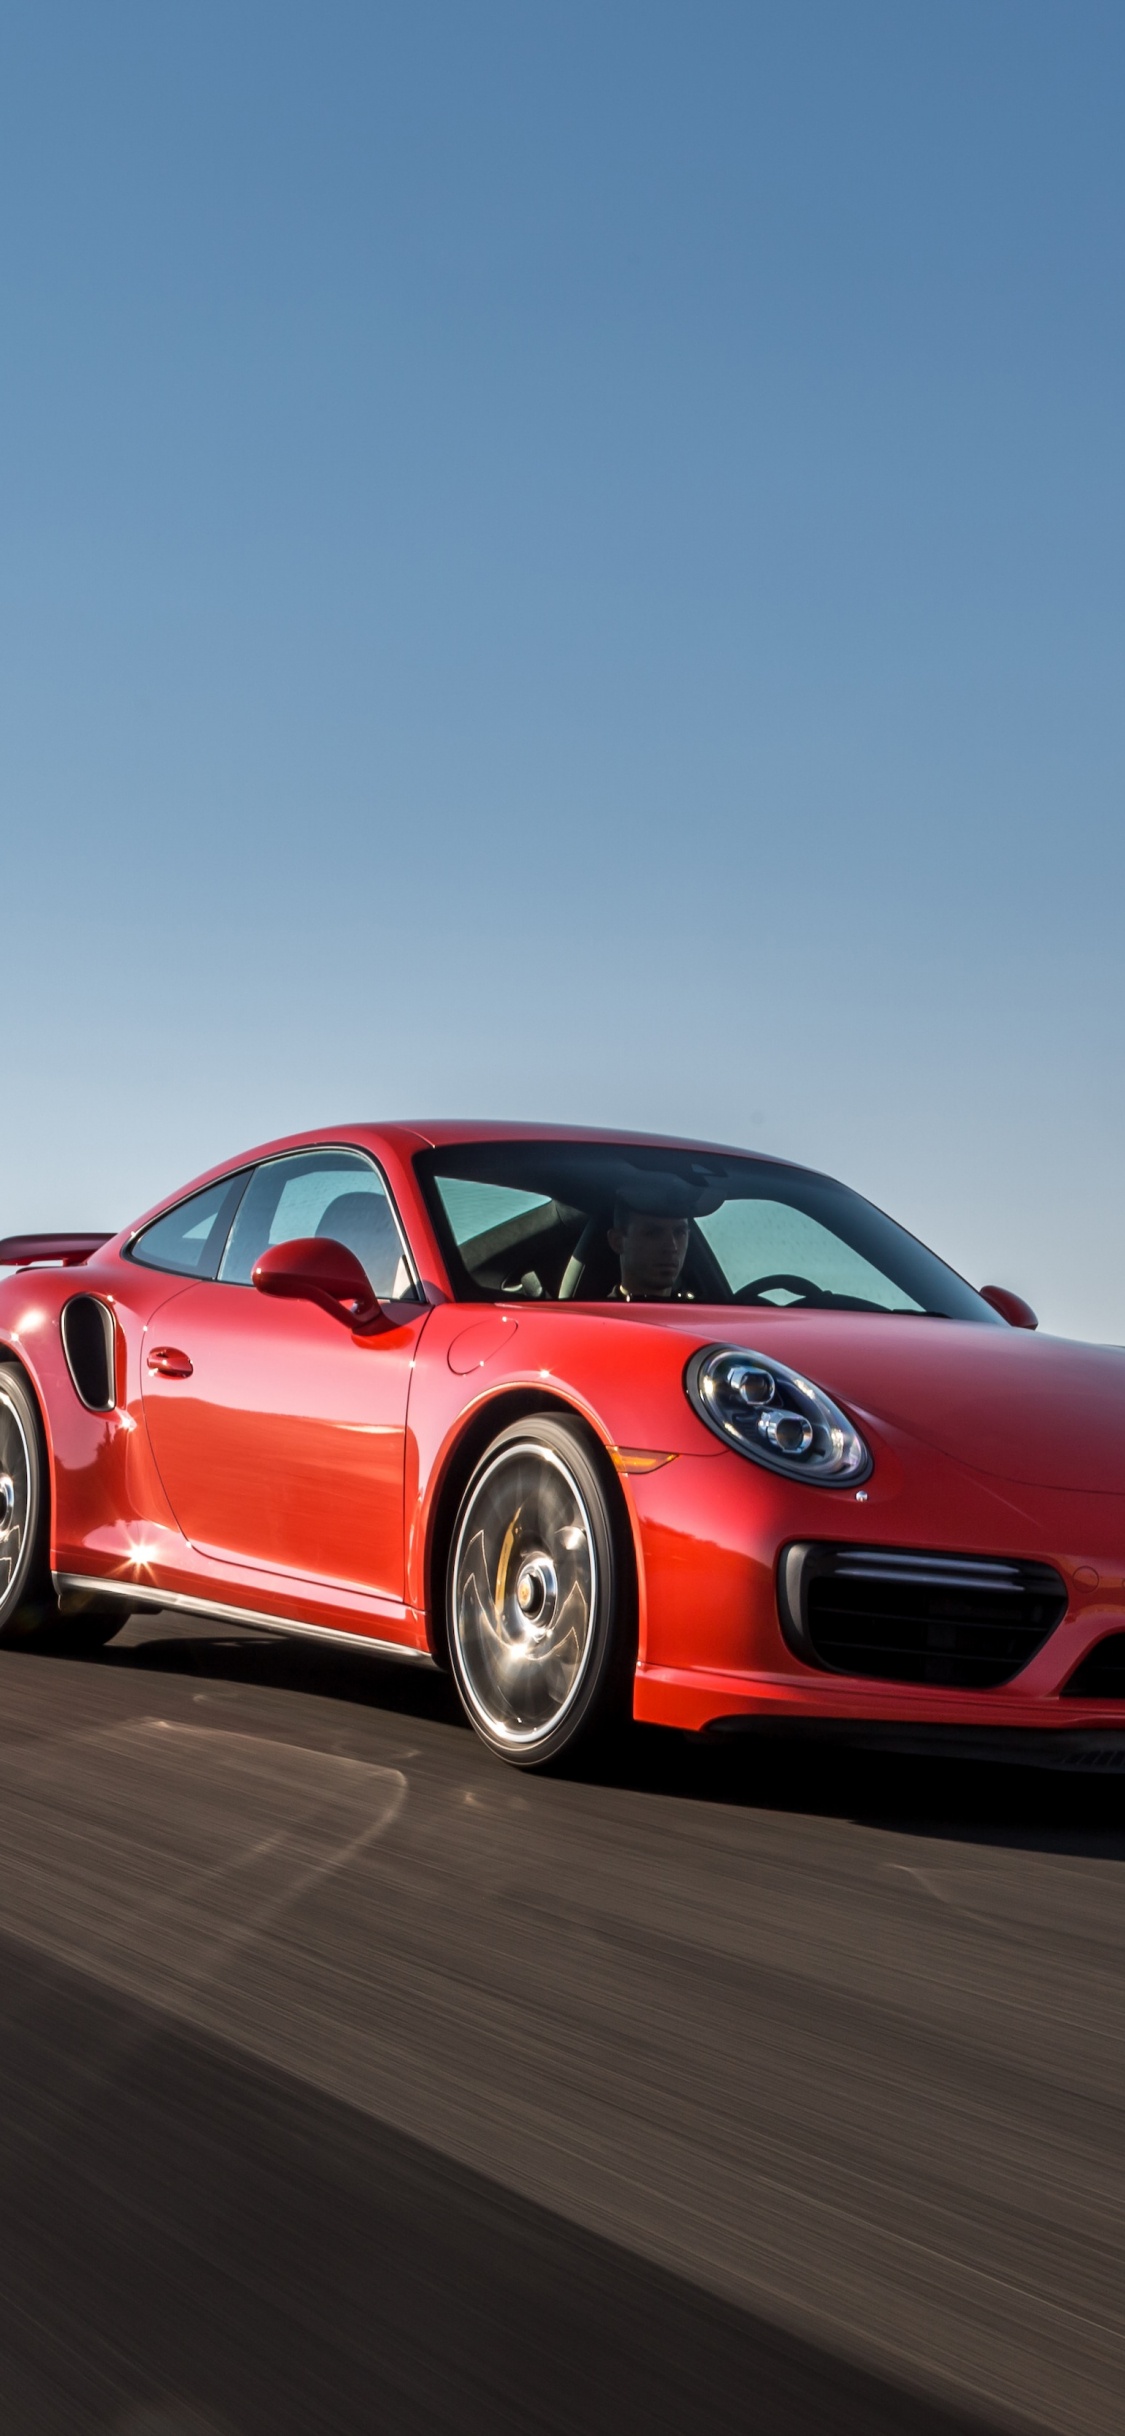 Porsche 911 Rojo en la Carretera Durante el Día. Wallpaper in 1125x2436 Resolution